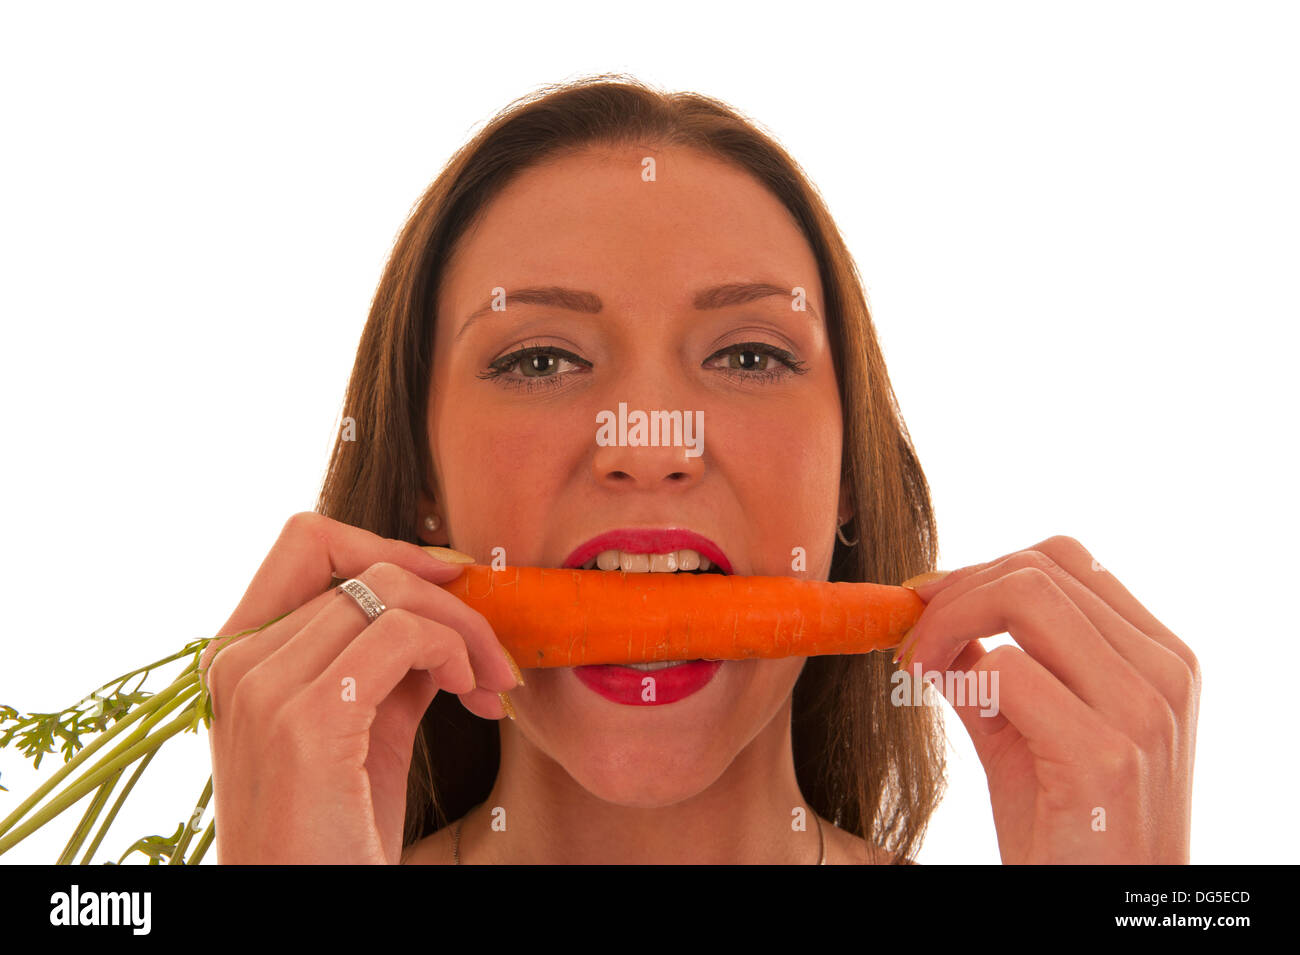 Giovane ragazza mette i suoi denti in una carota arancione Foto Stock